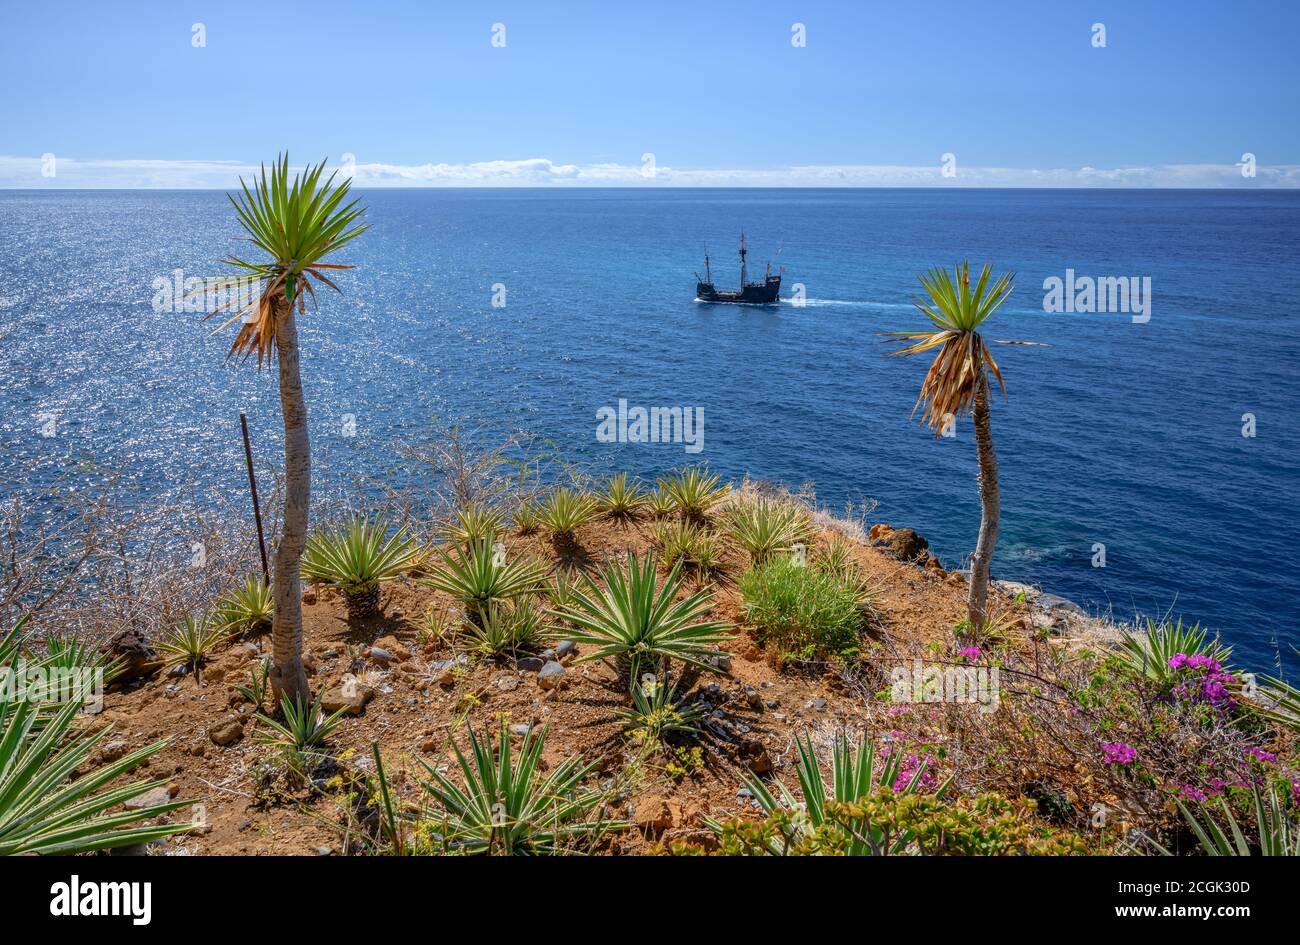 Replica Santa Maria sailing ship near Camara de Lobos, Madeira Stock Photo